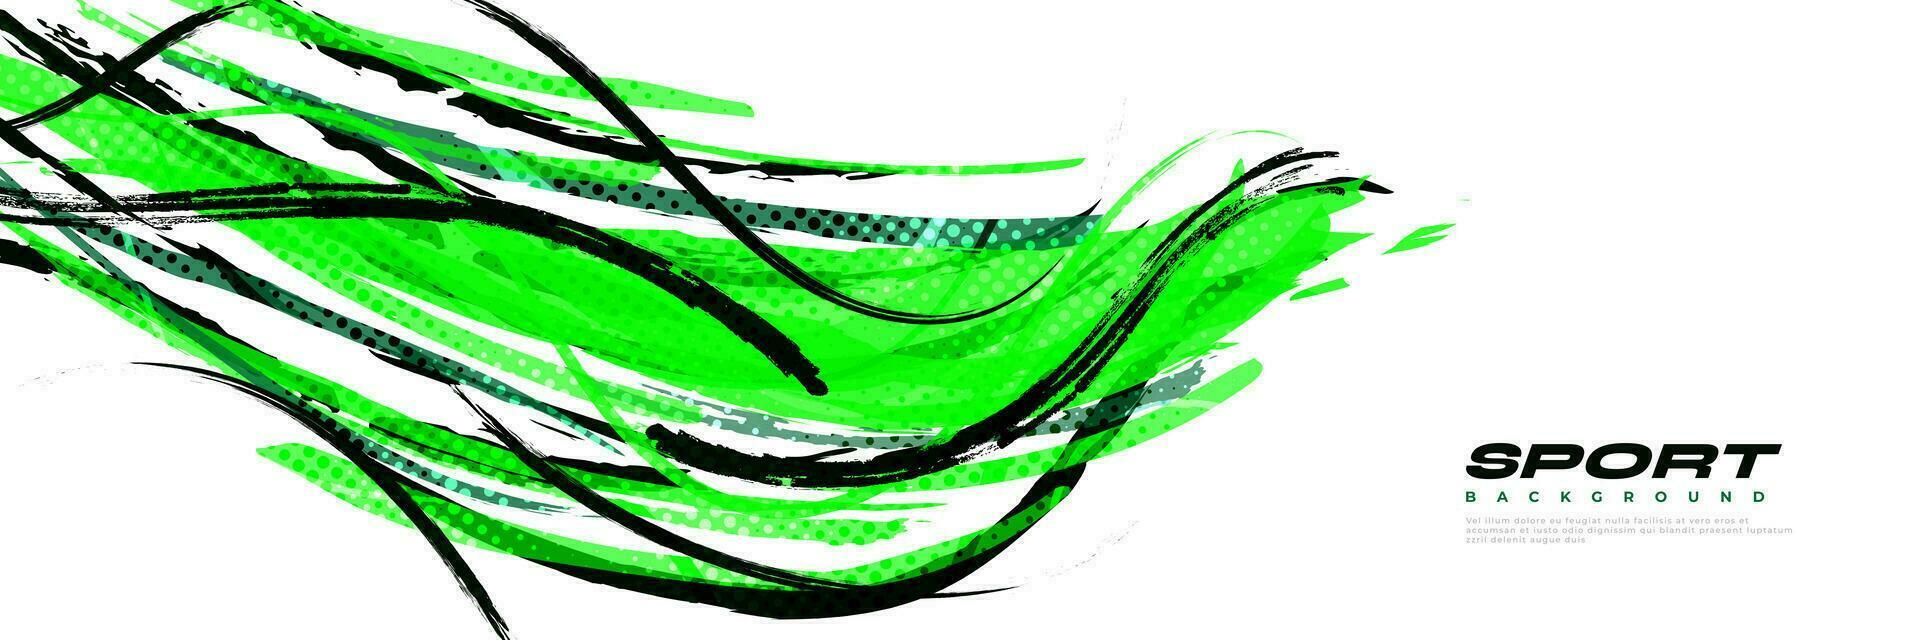 abstract zwart en groen borstel achtergrond met sportief stijl en halftone effect. borstel beroerte illustratie voor banier, poster, of sport- achtergrond vector